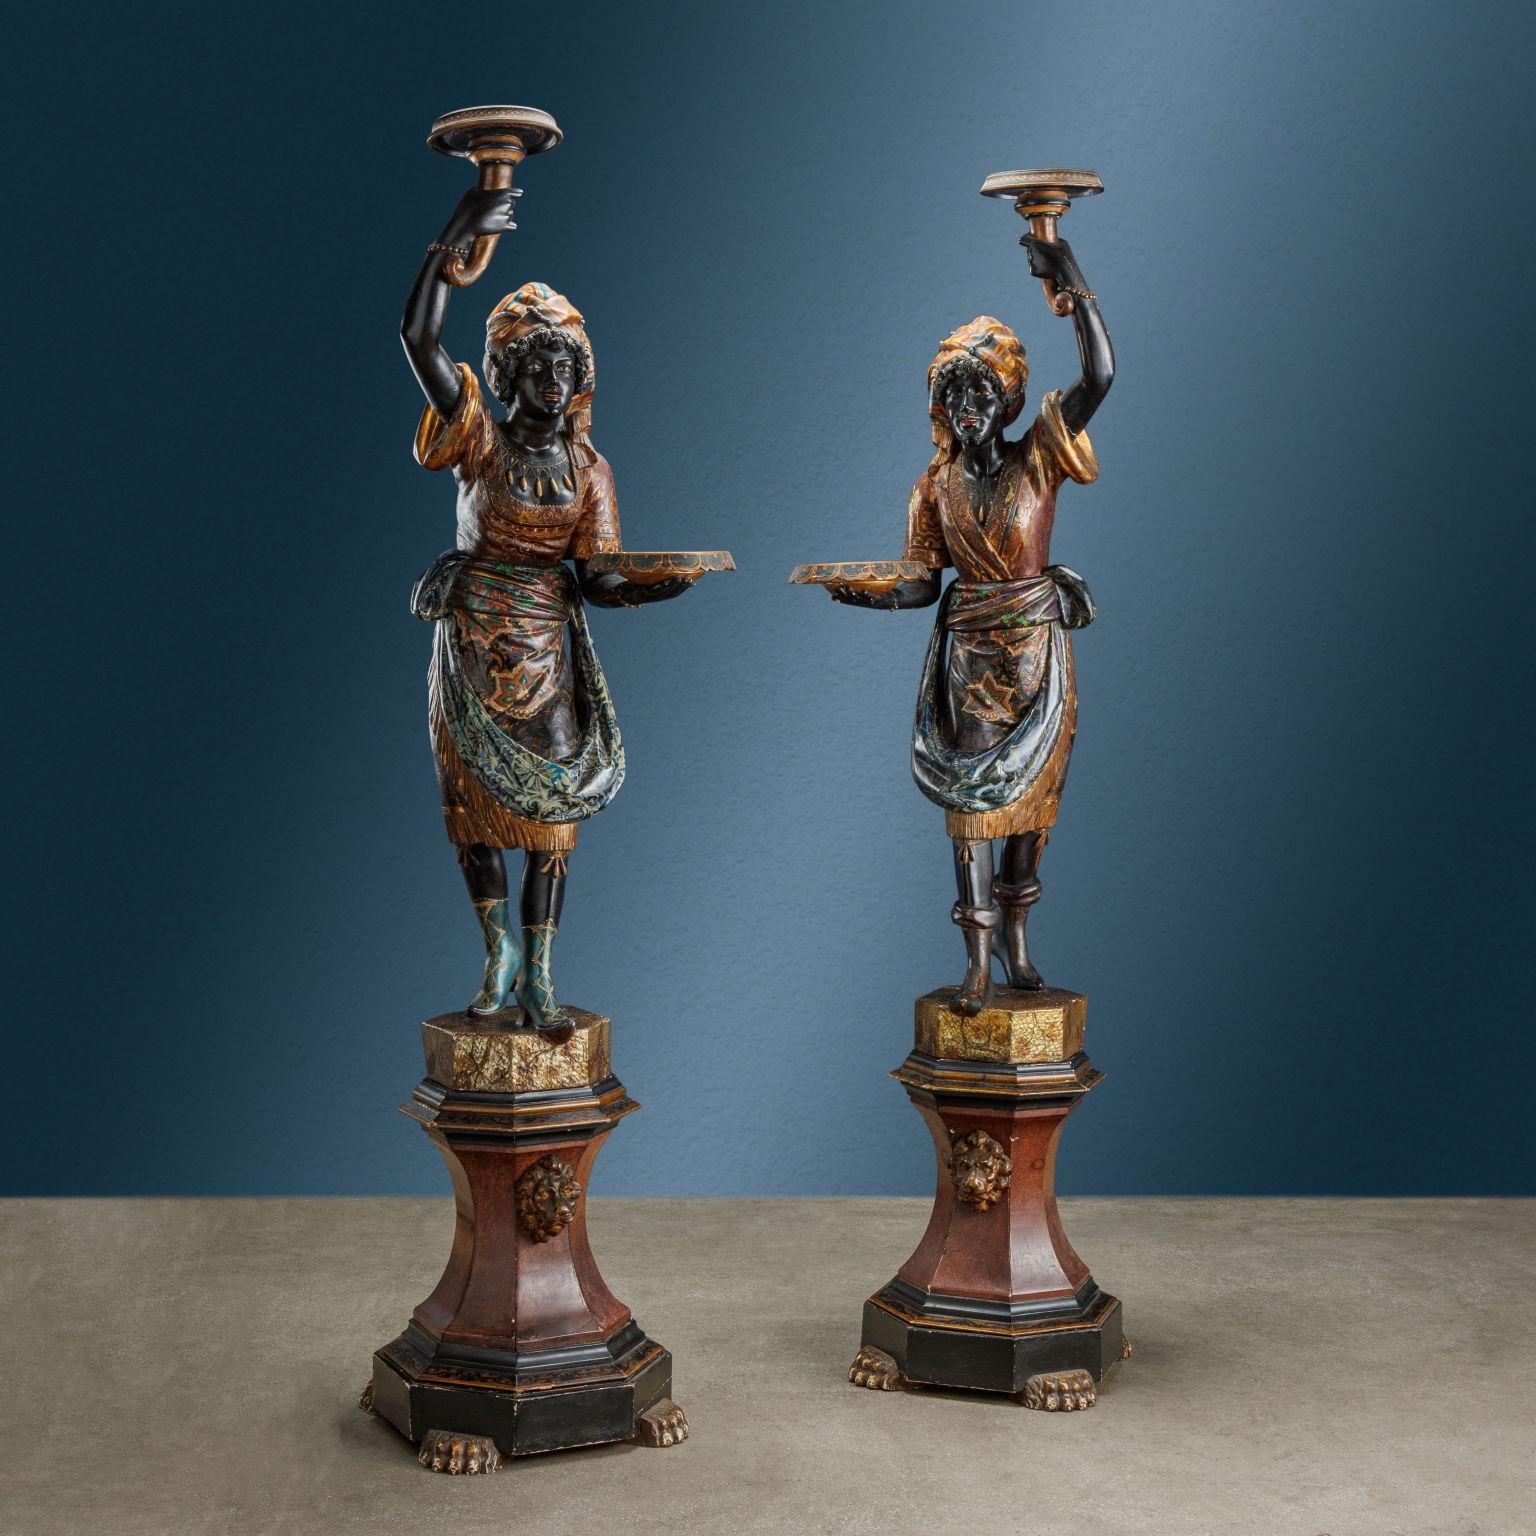 Ein Paar fackeltragender Skulpturen, die zwei venezianische Mauren darstellen, eine weibliche und eine männliche. In gespiegelter Haltung, leicht nach vorne gerichtet, halten sie in der einen Hand ein Tablett und in der anderen, über den Kopf